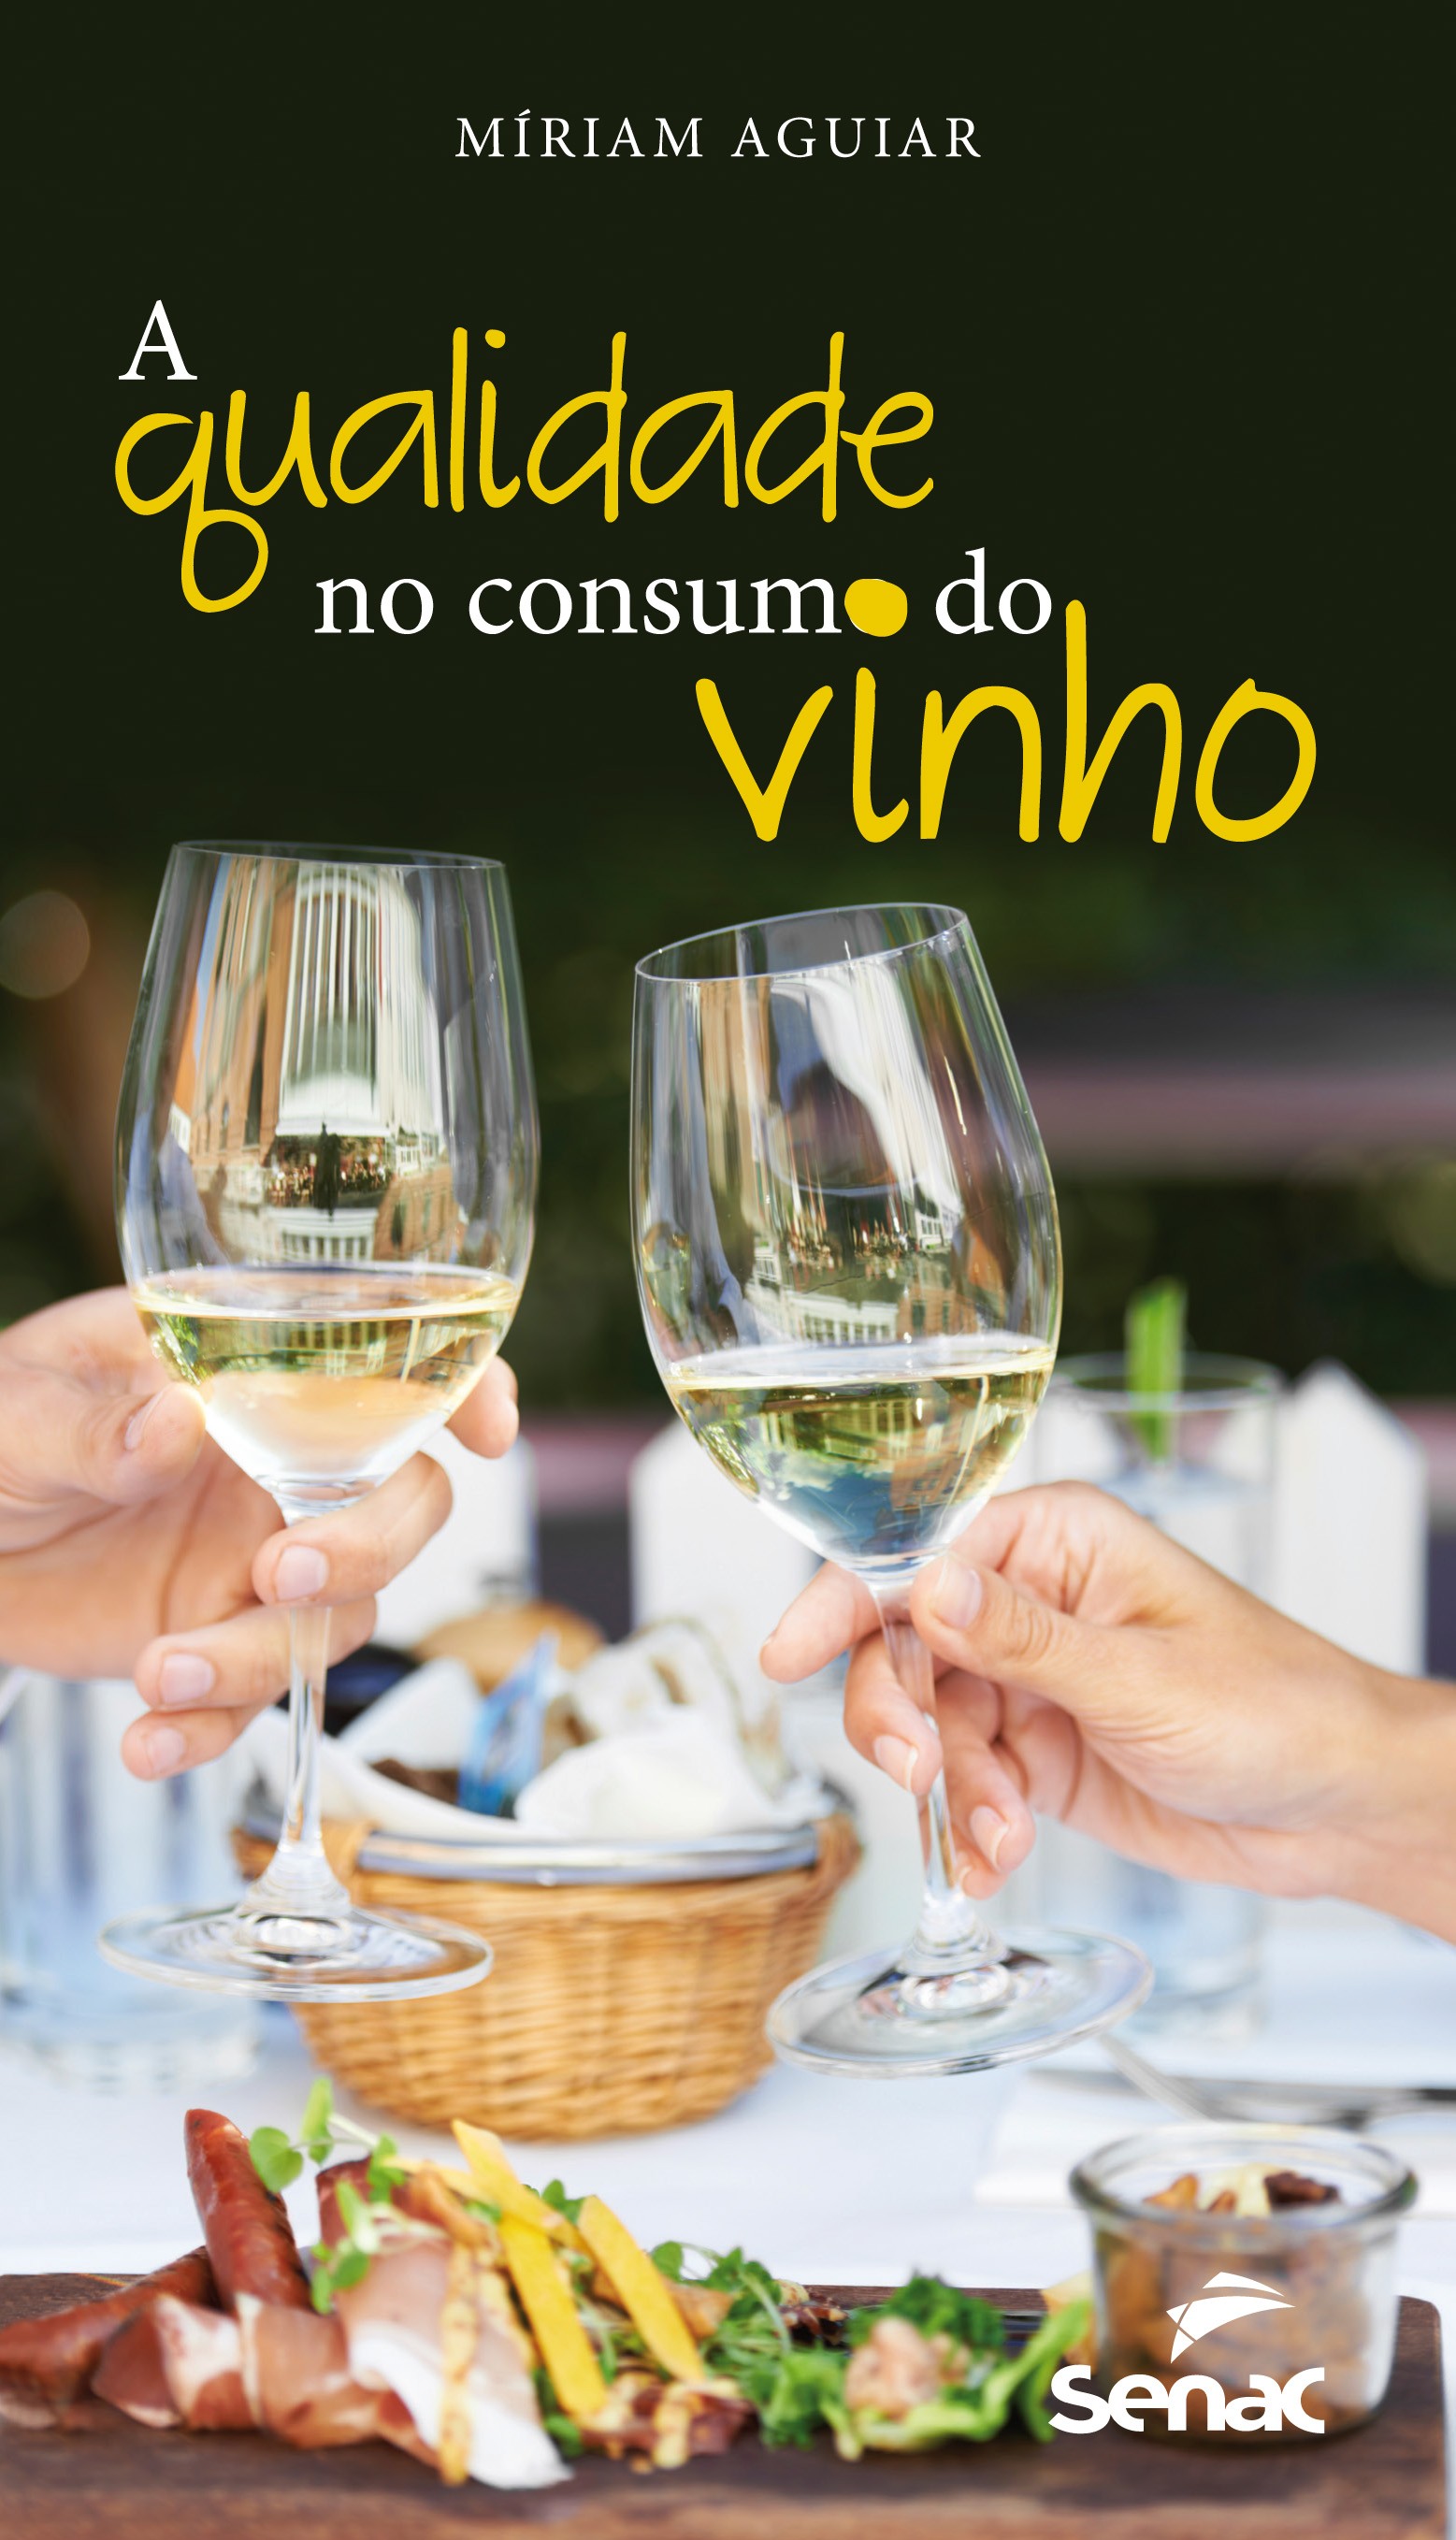 A qualidade no consumo de vinhos